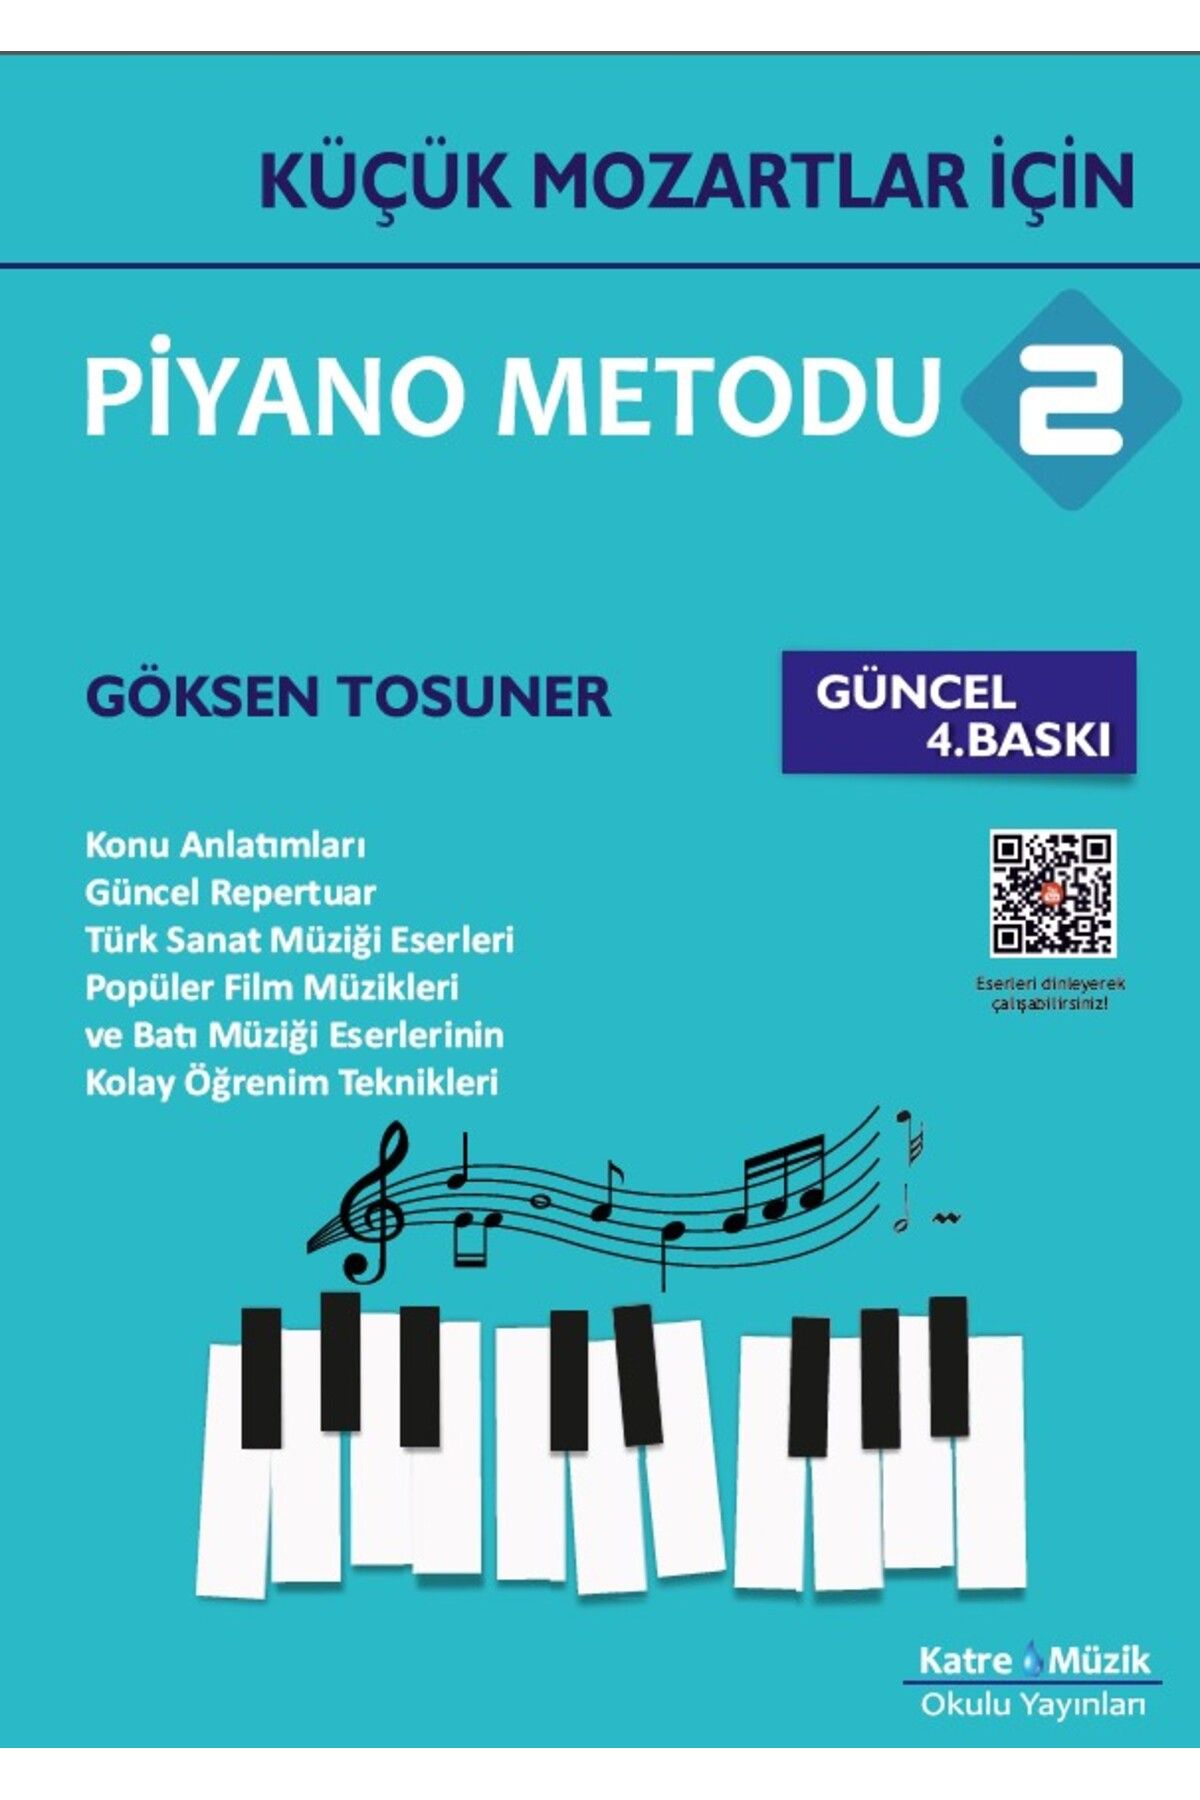 Katre Müzik Okulu Yayınları Küçük Mozartlar Için Piyano Metodu 2-güncel 4.baskı